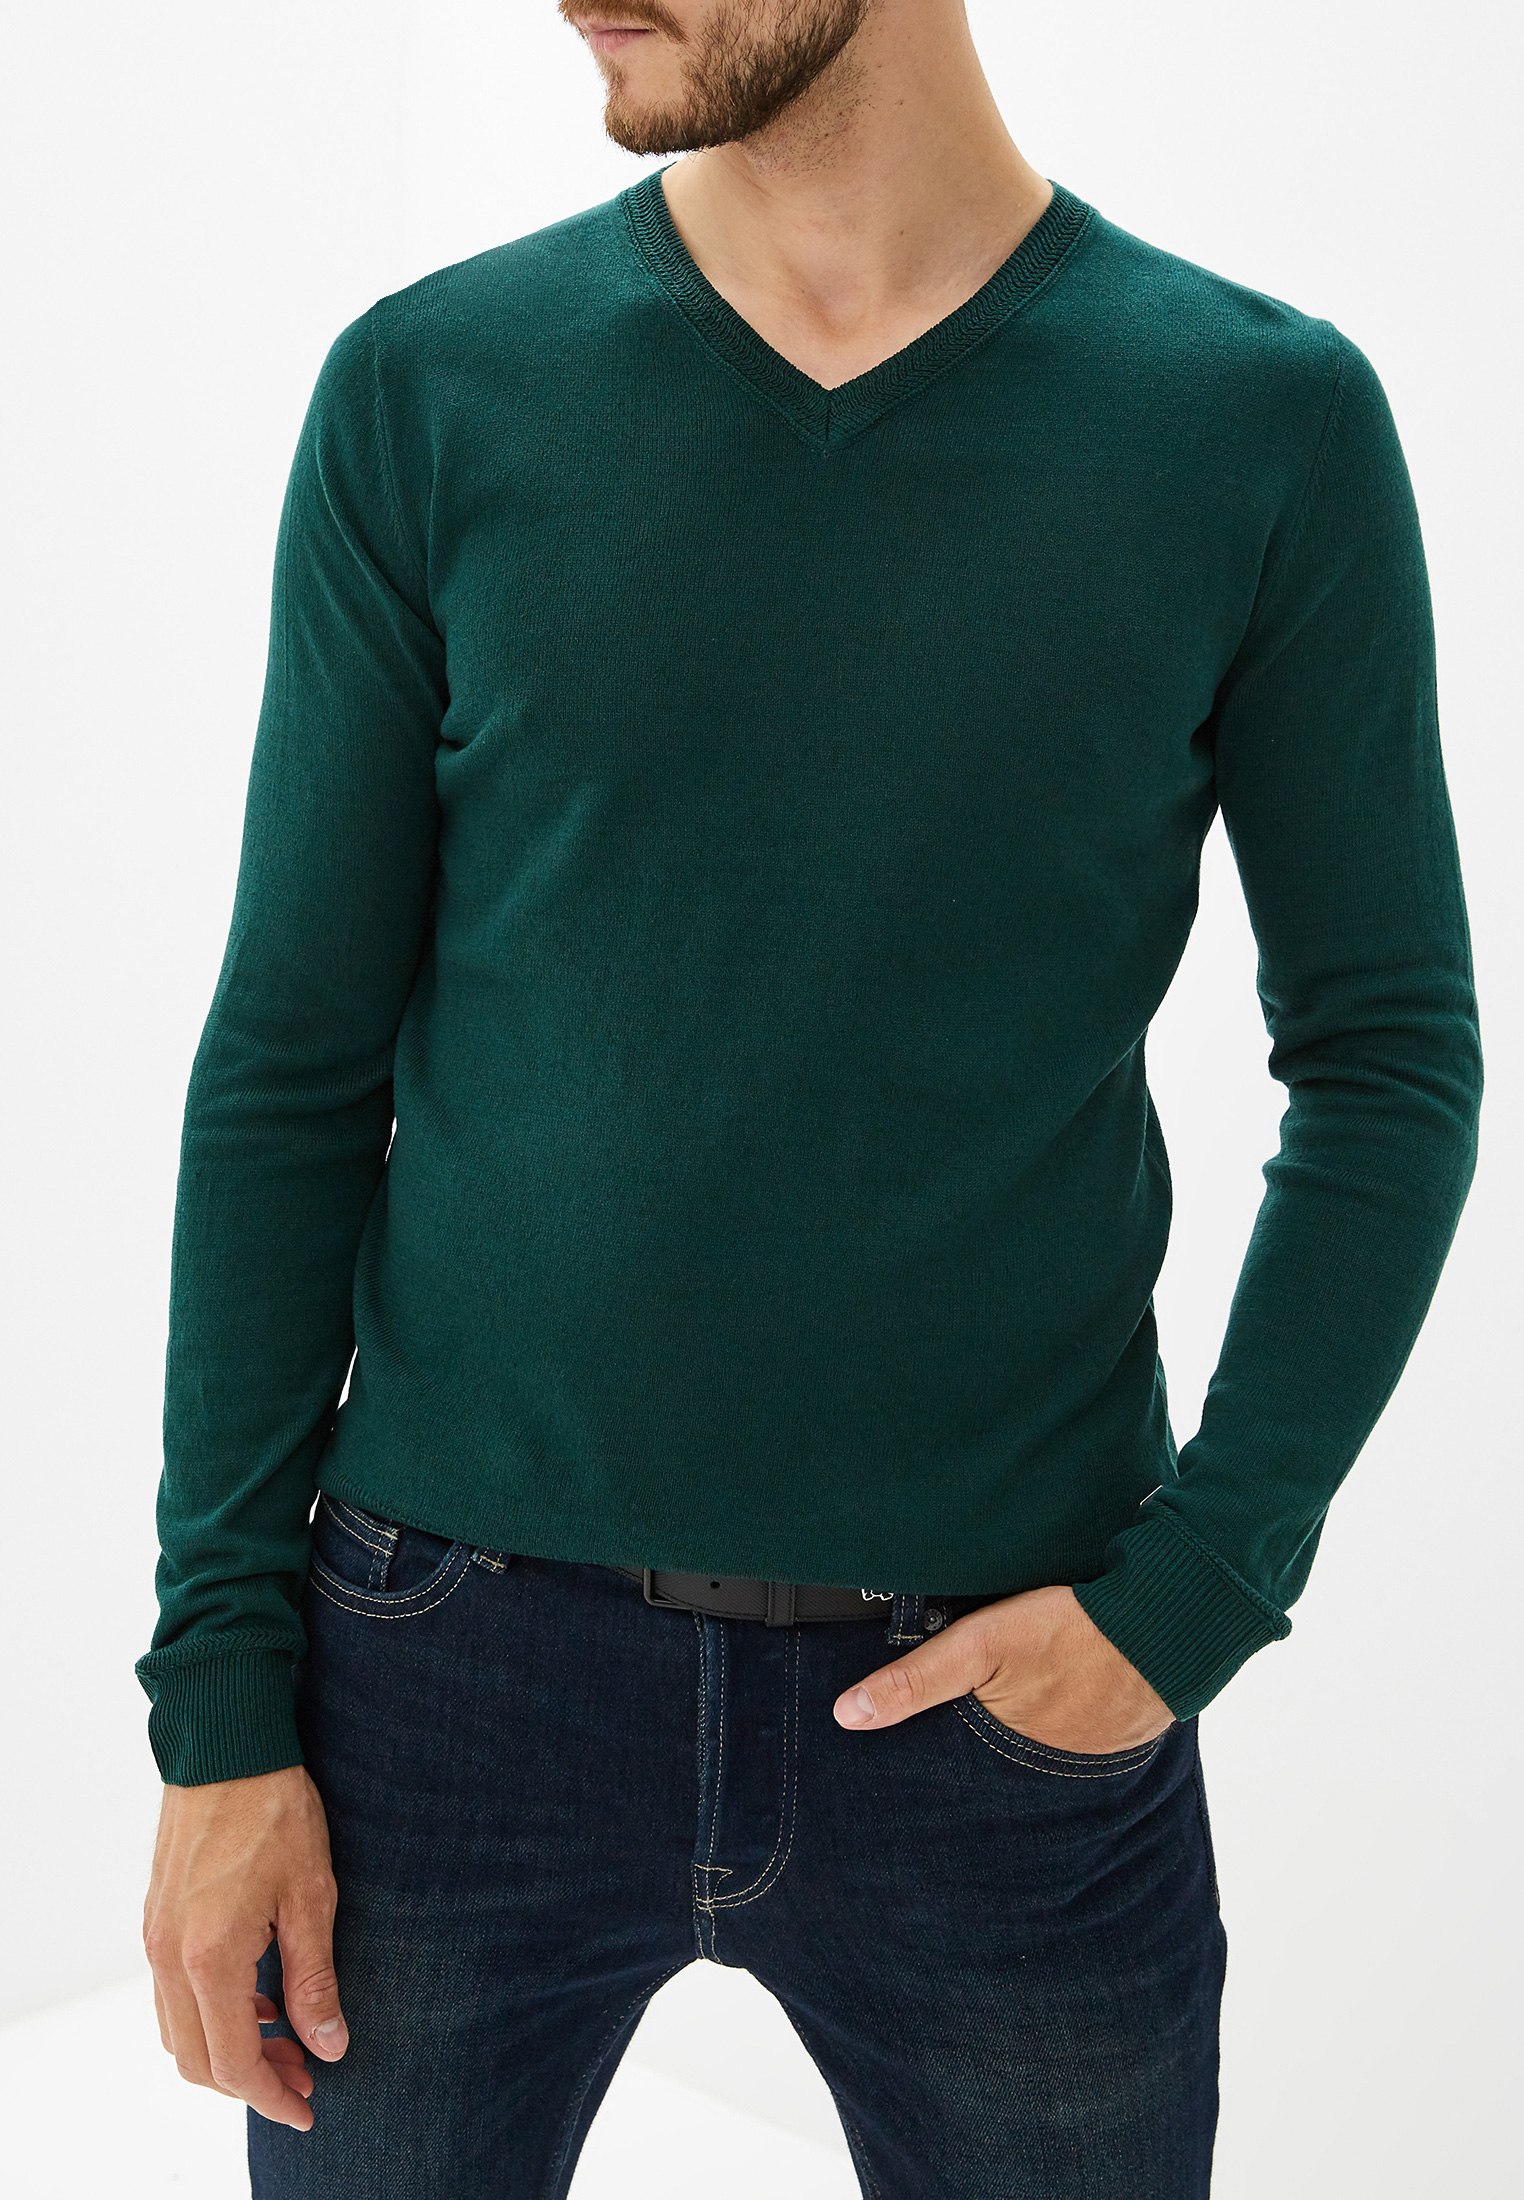 Зеленые свитеры мужские. Свитер Tom Tailor мужской зелёный. Зеленый пуловер Tom Tailor. Пуловер мужской Superdry Green. Джемпер Tom Tailor мужской зеленый.